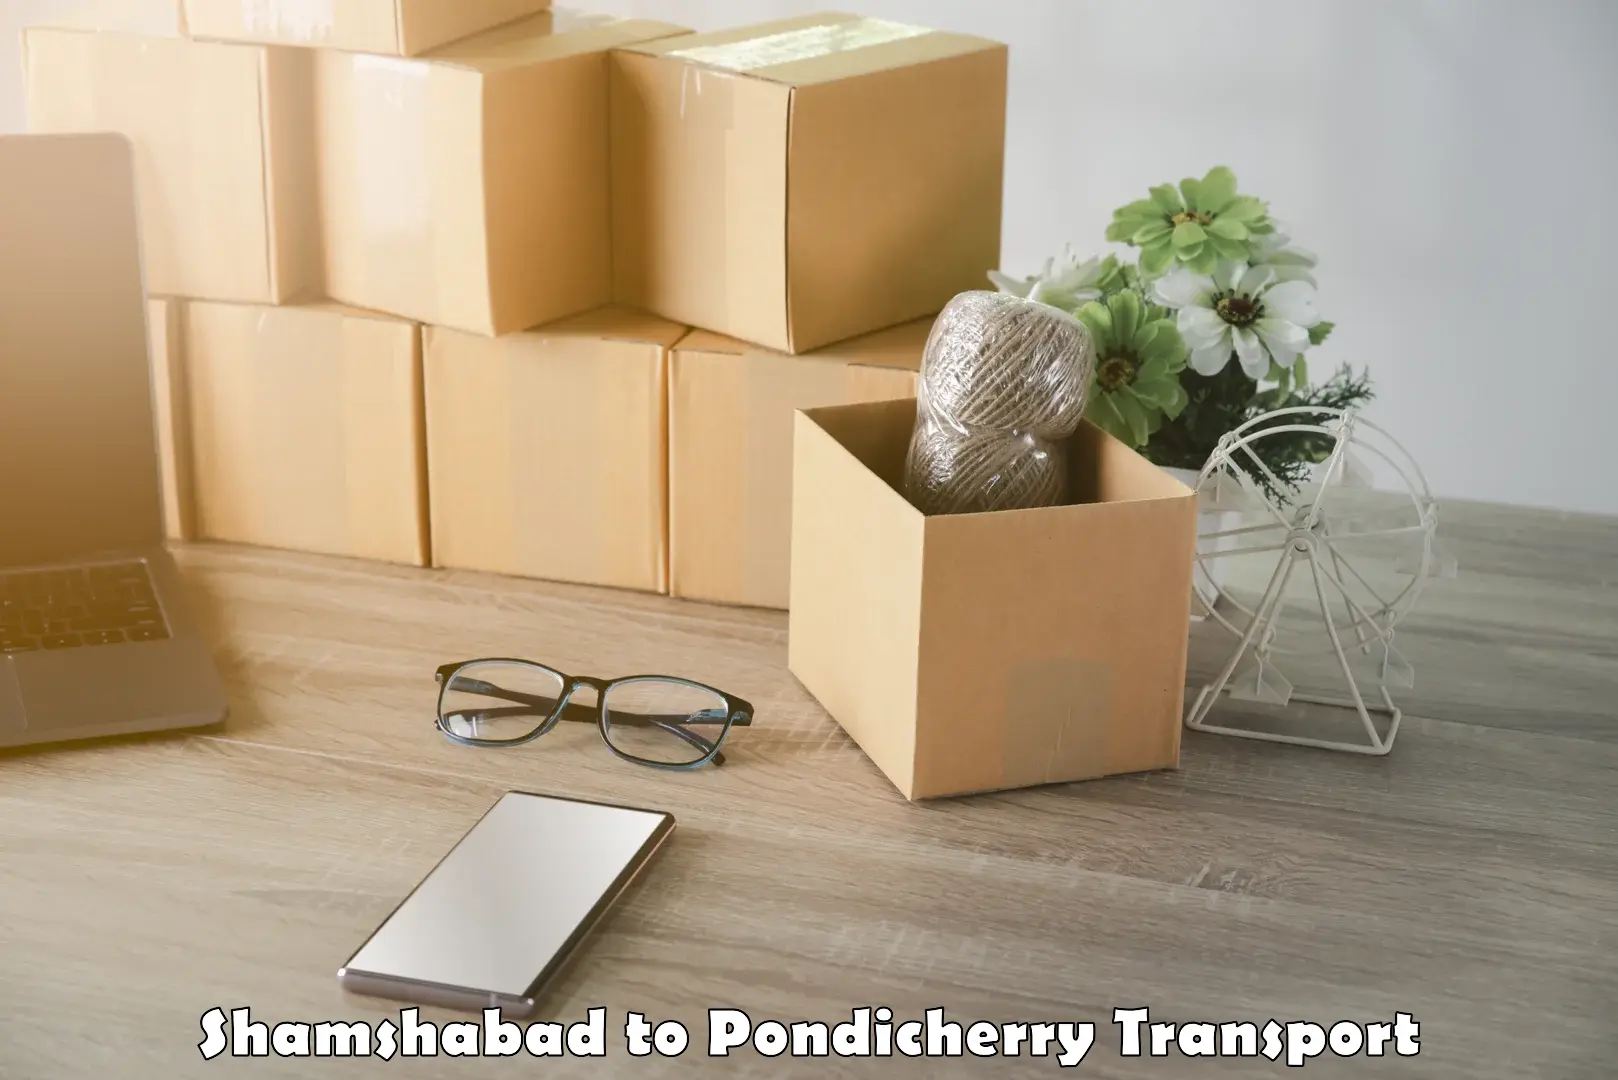 Daily transport service Shamshabad to Pondicherry